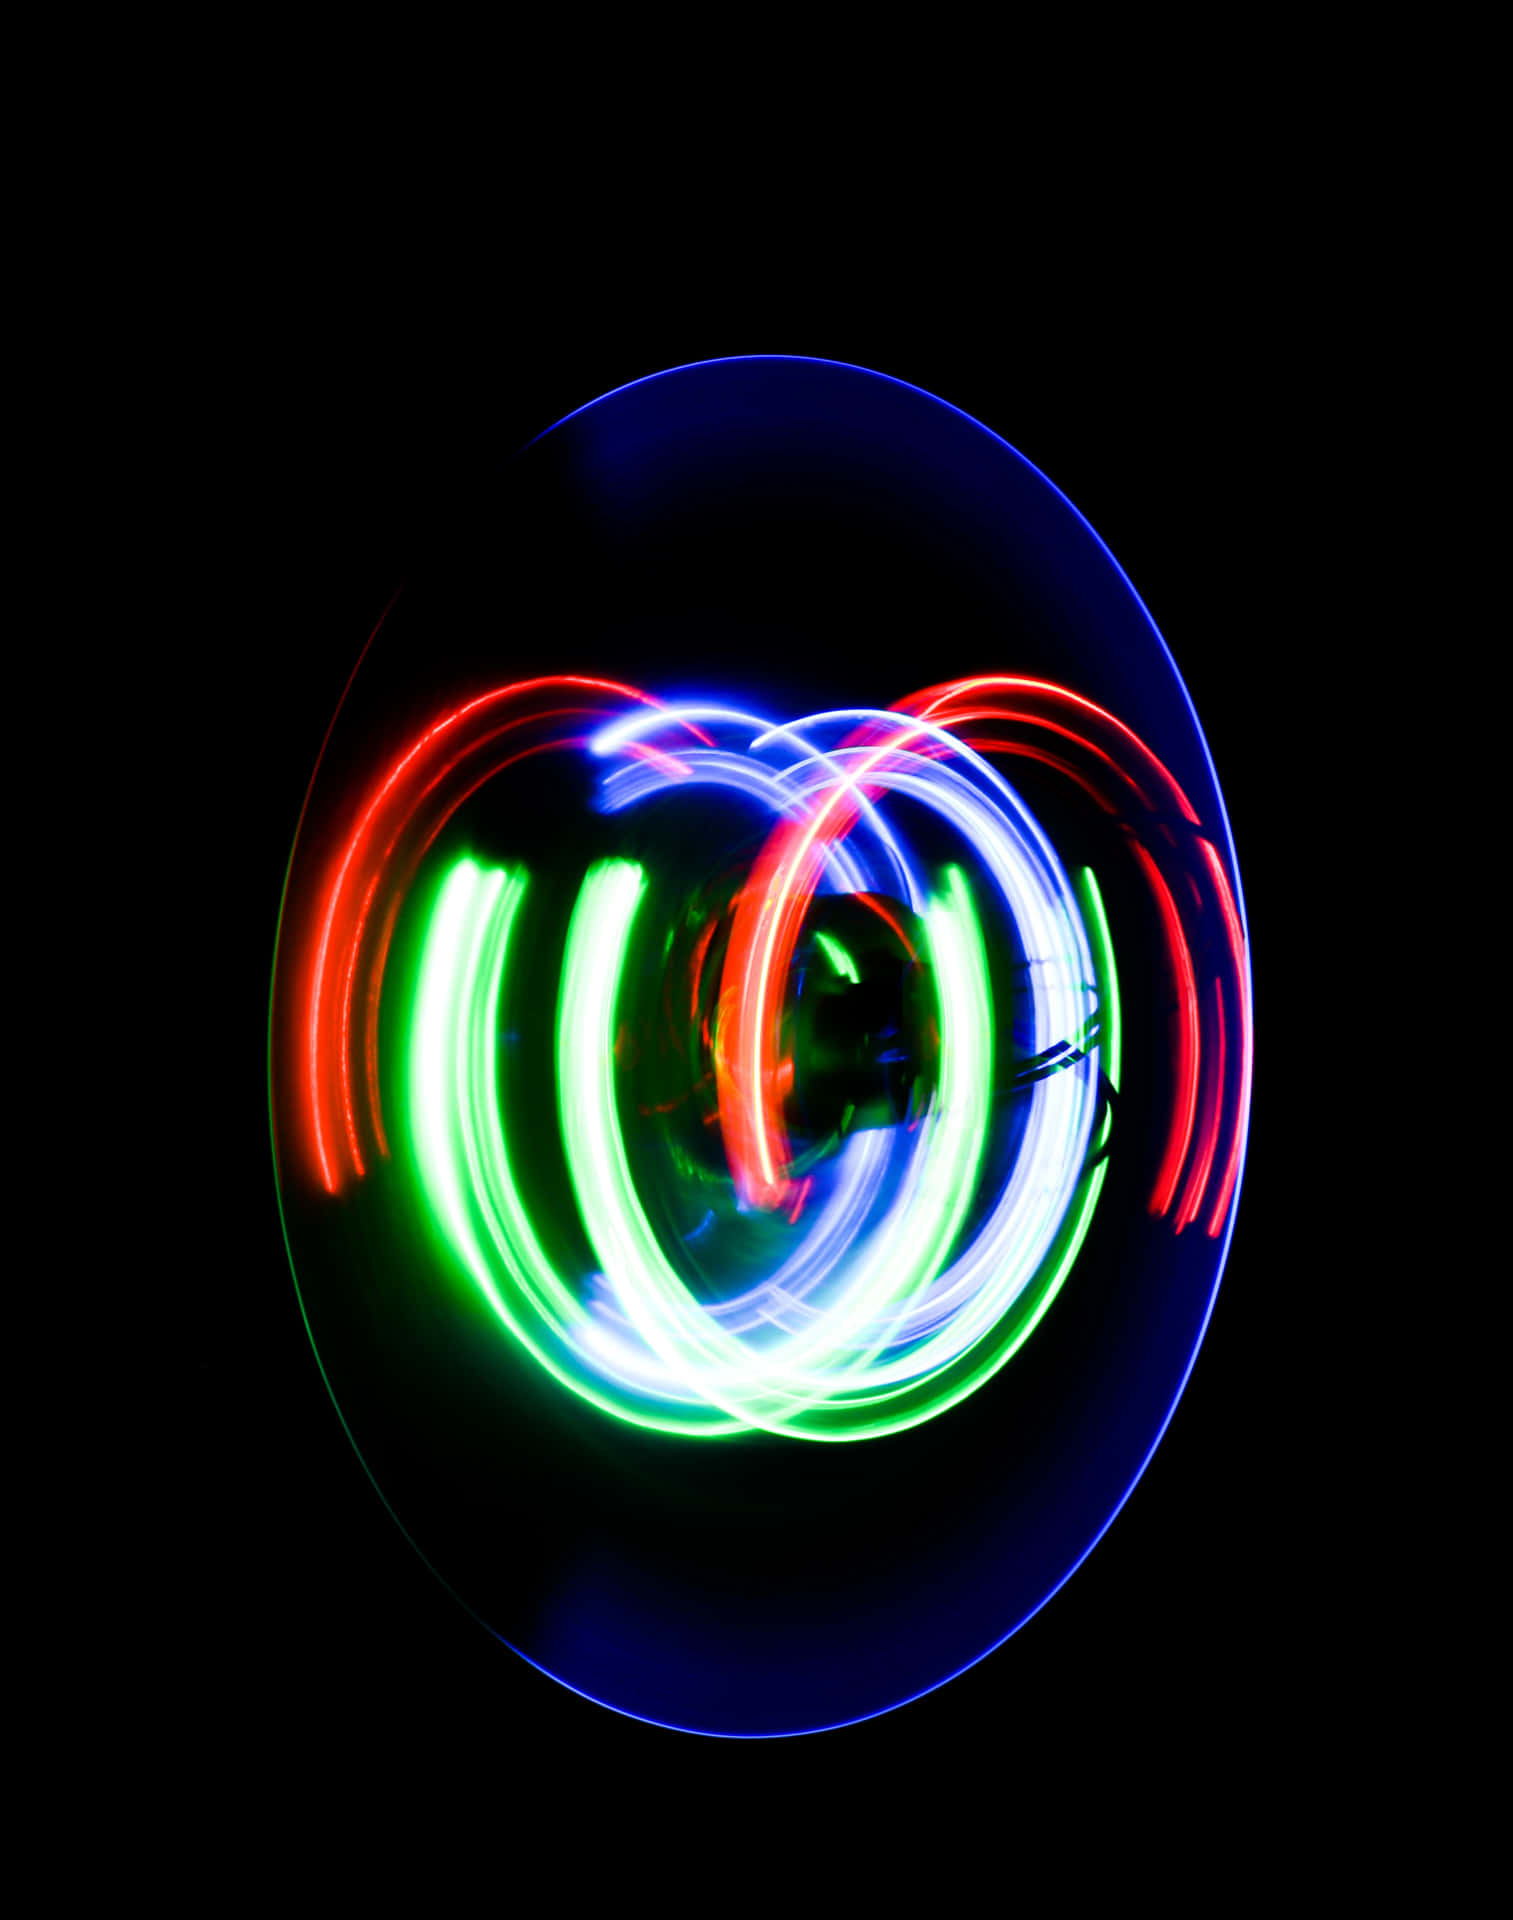 A Circular Light